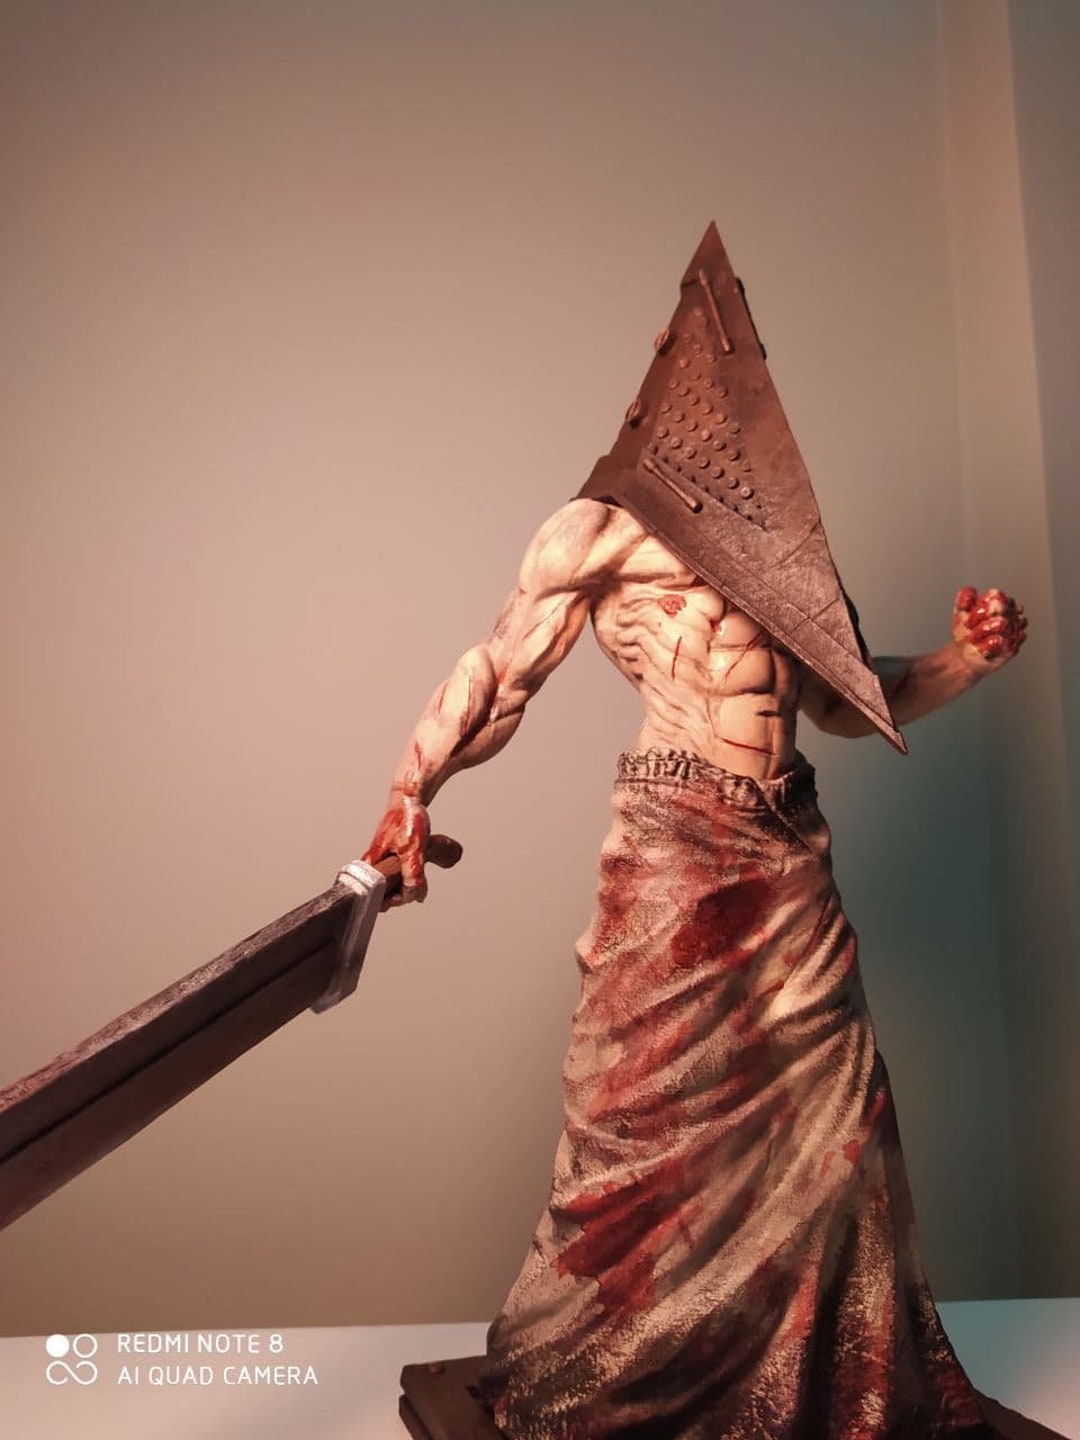 Designer de Silent Hill partilha conceito original de Pyramid Head